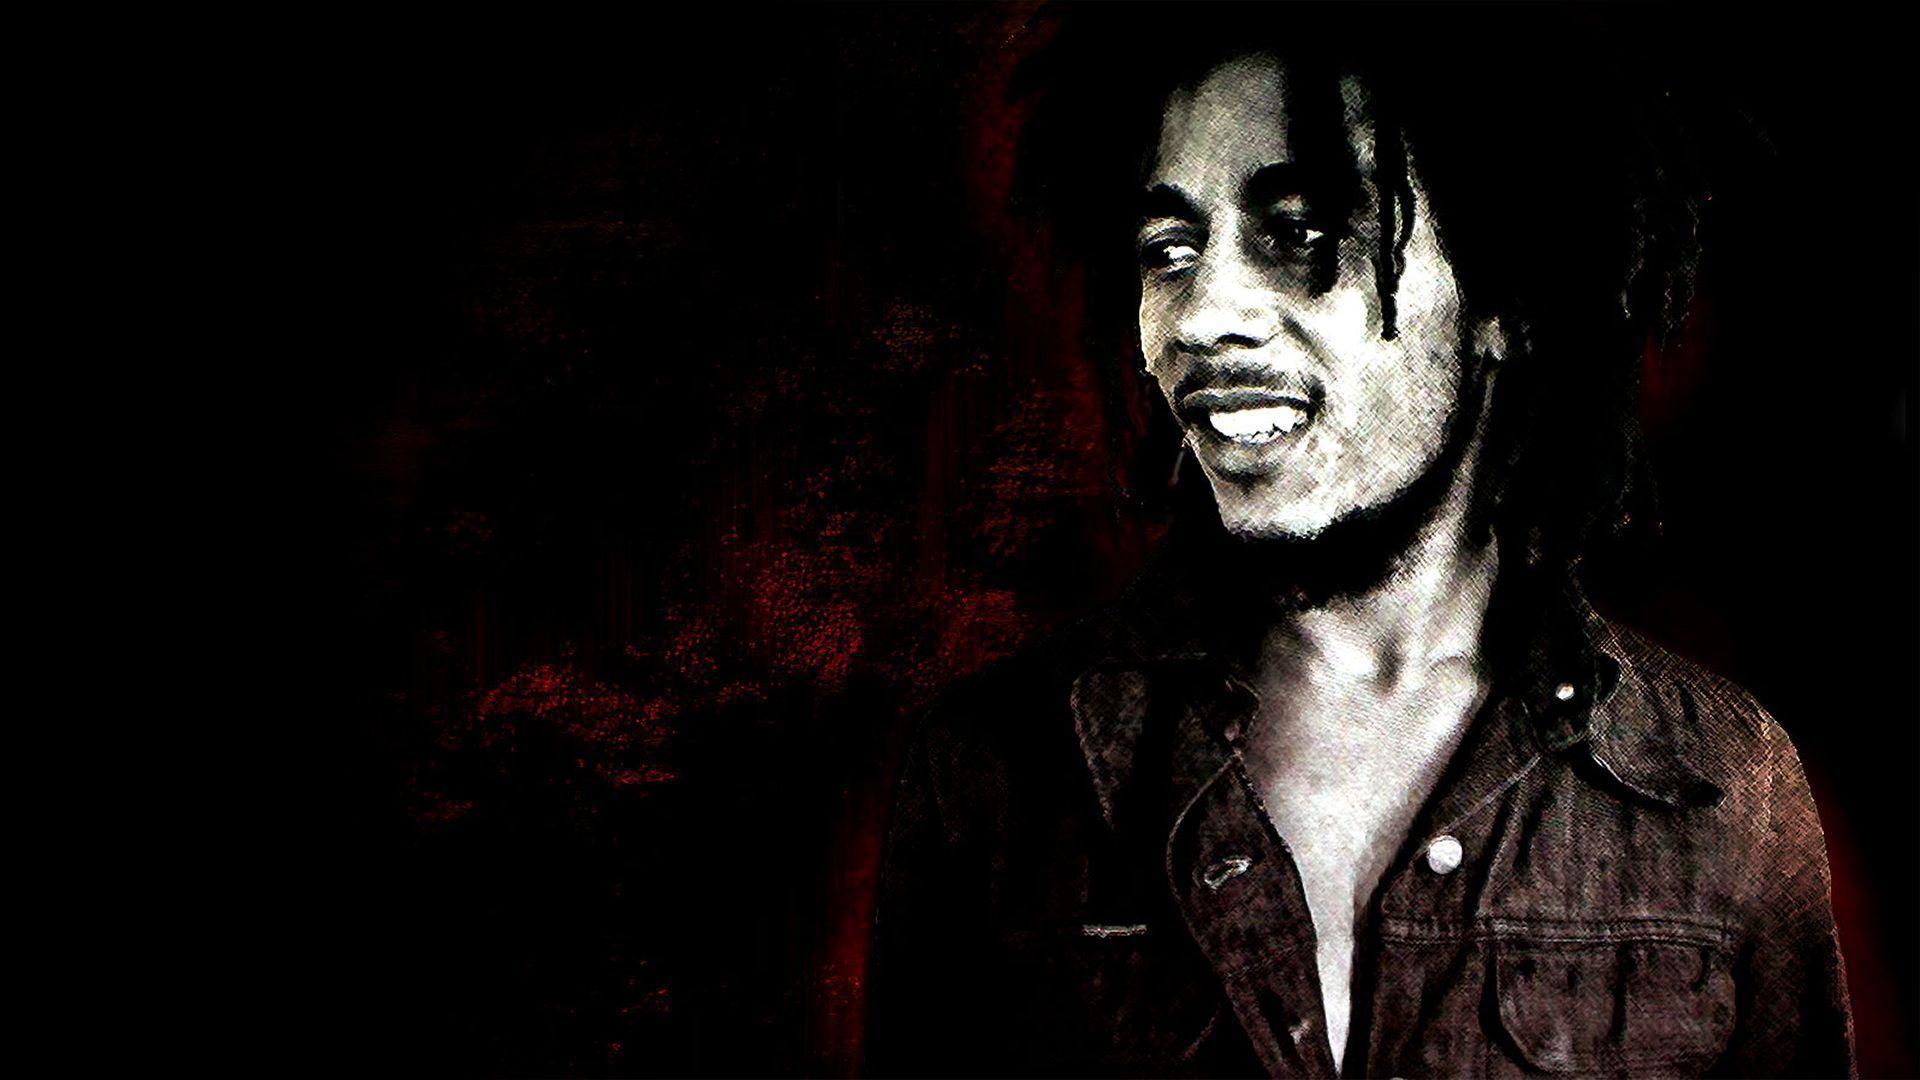 Bob Marley Wallpaper. Bob Marley Background